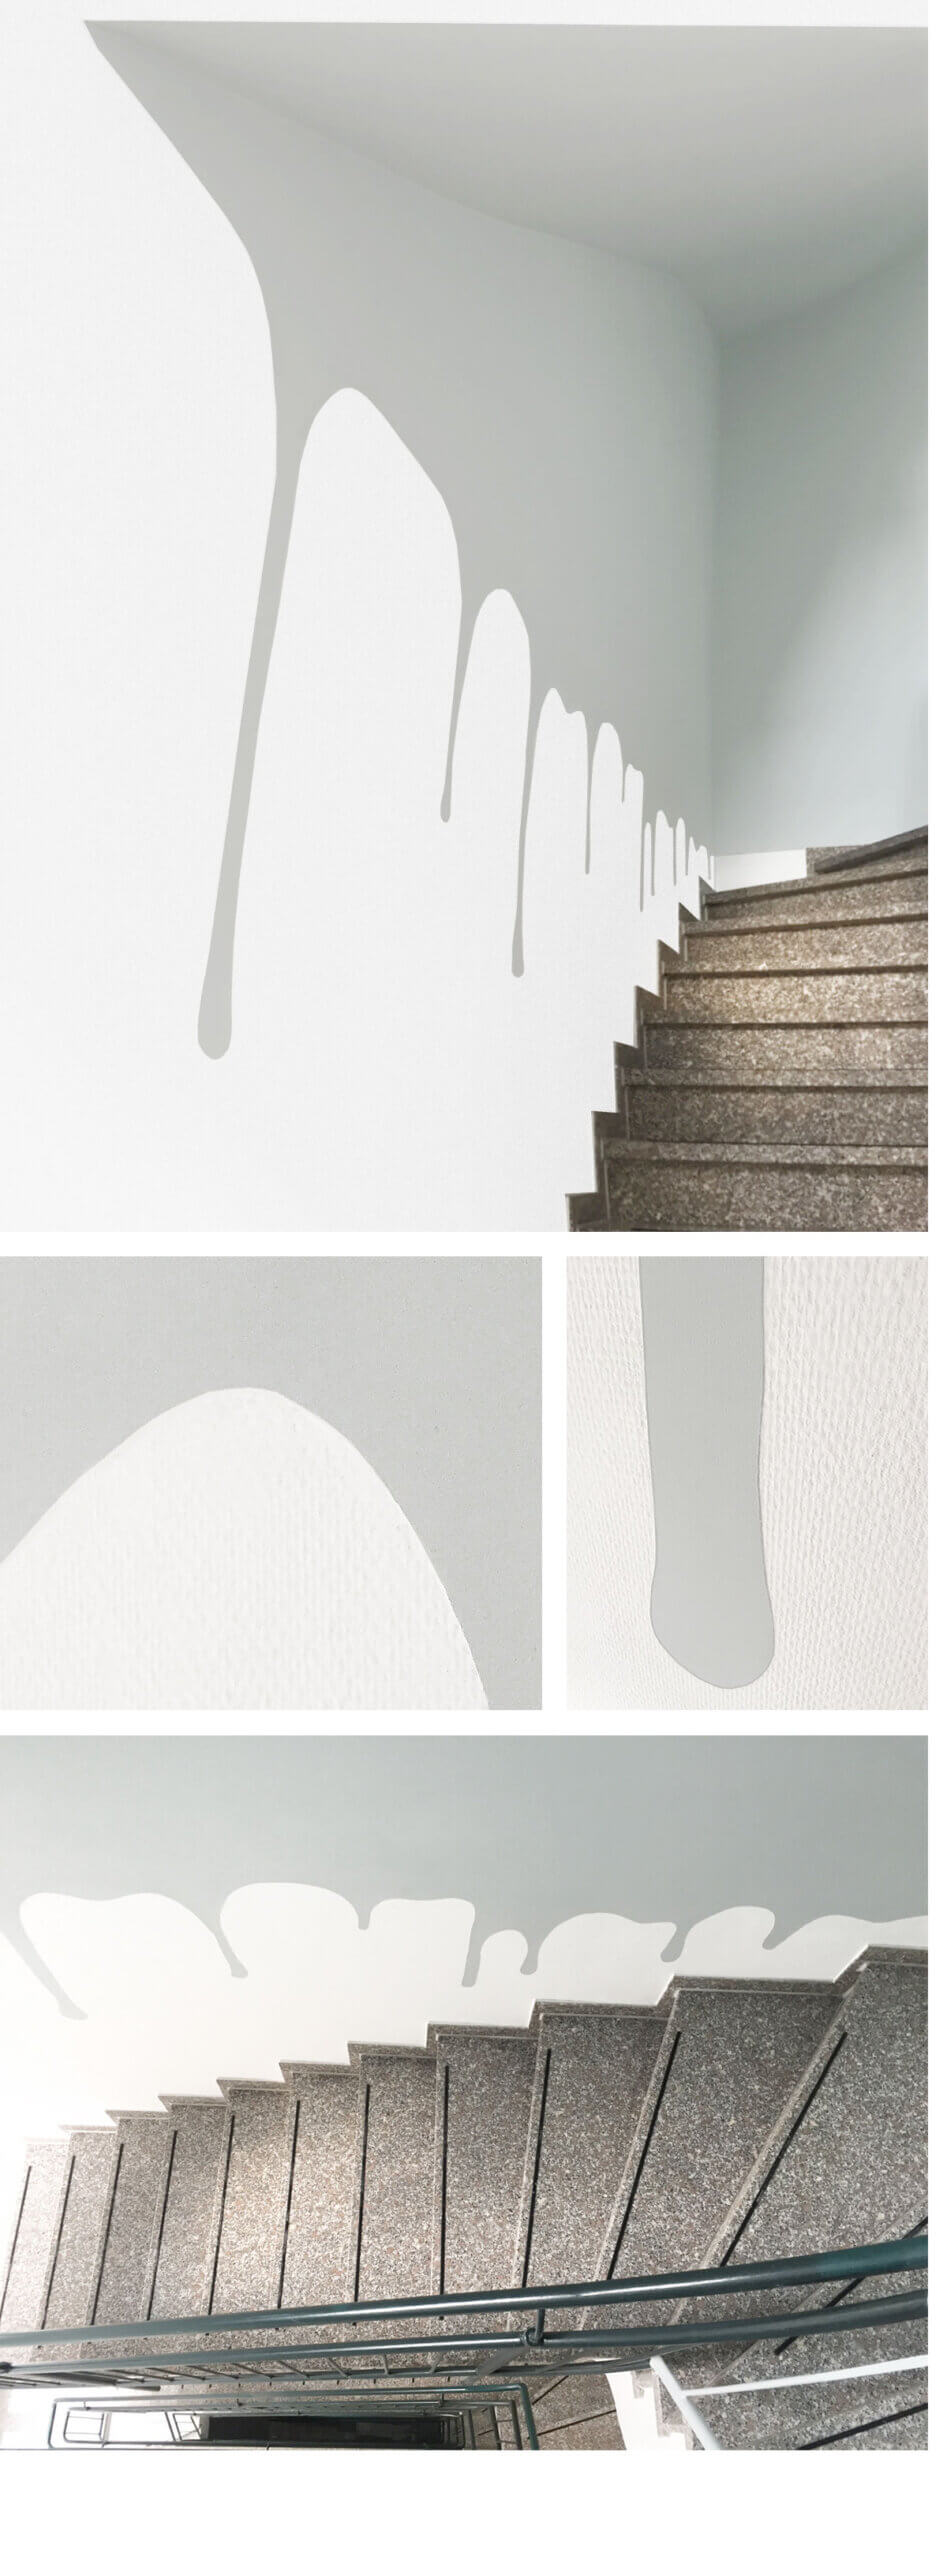 Katja Hofmann, Studio for good handmade Design, Idee, Entwurf, handwerkliche Umsetzung, Wandbeschriftung im Treppenhaus, Schrobsdorff Bau